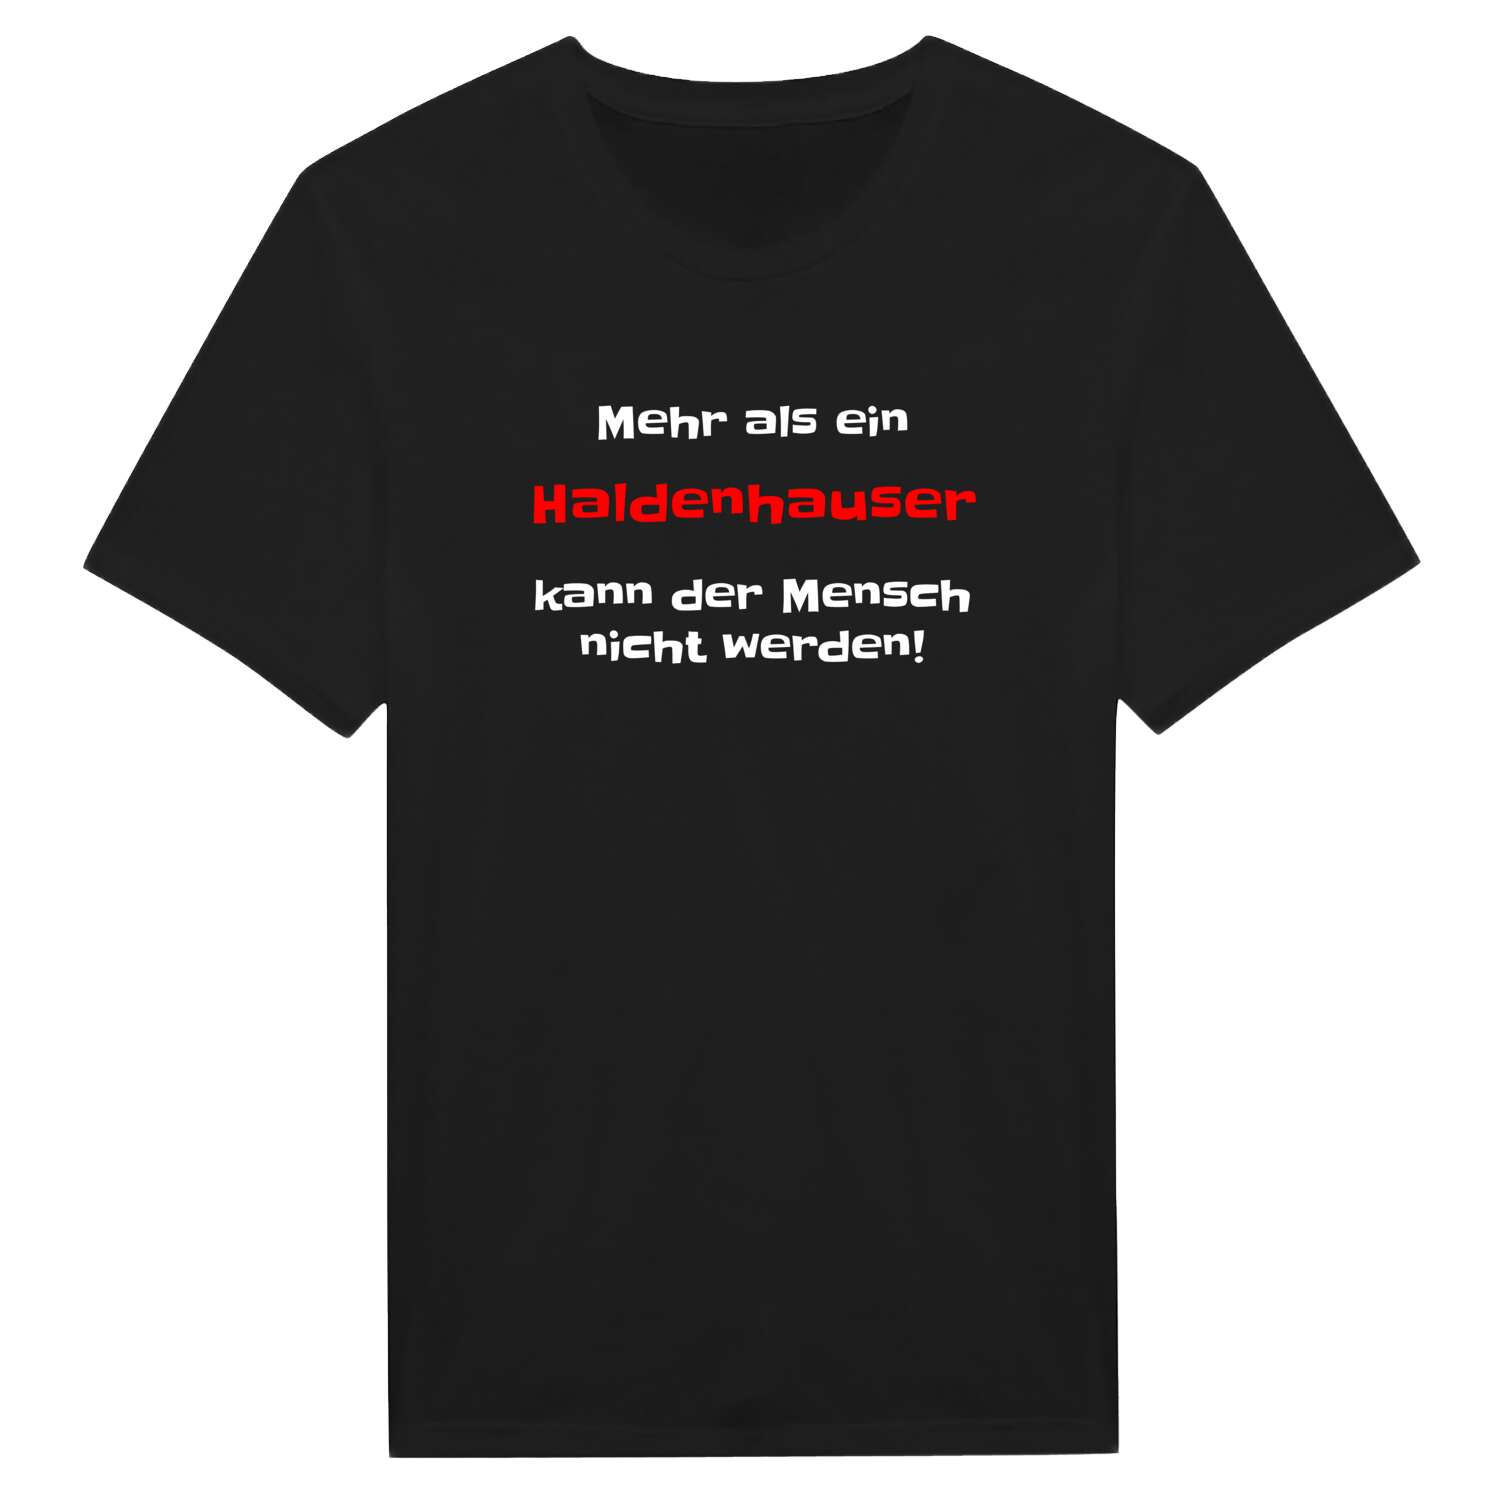 Haldenhaus T-Shirt »Mehr als ein«